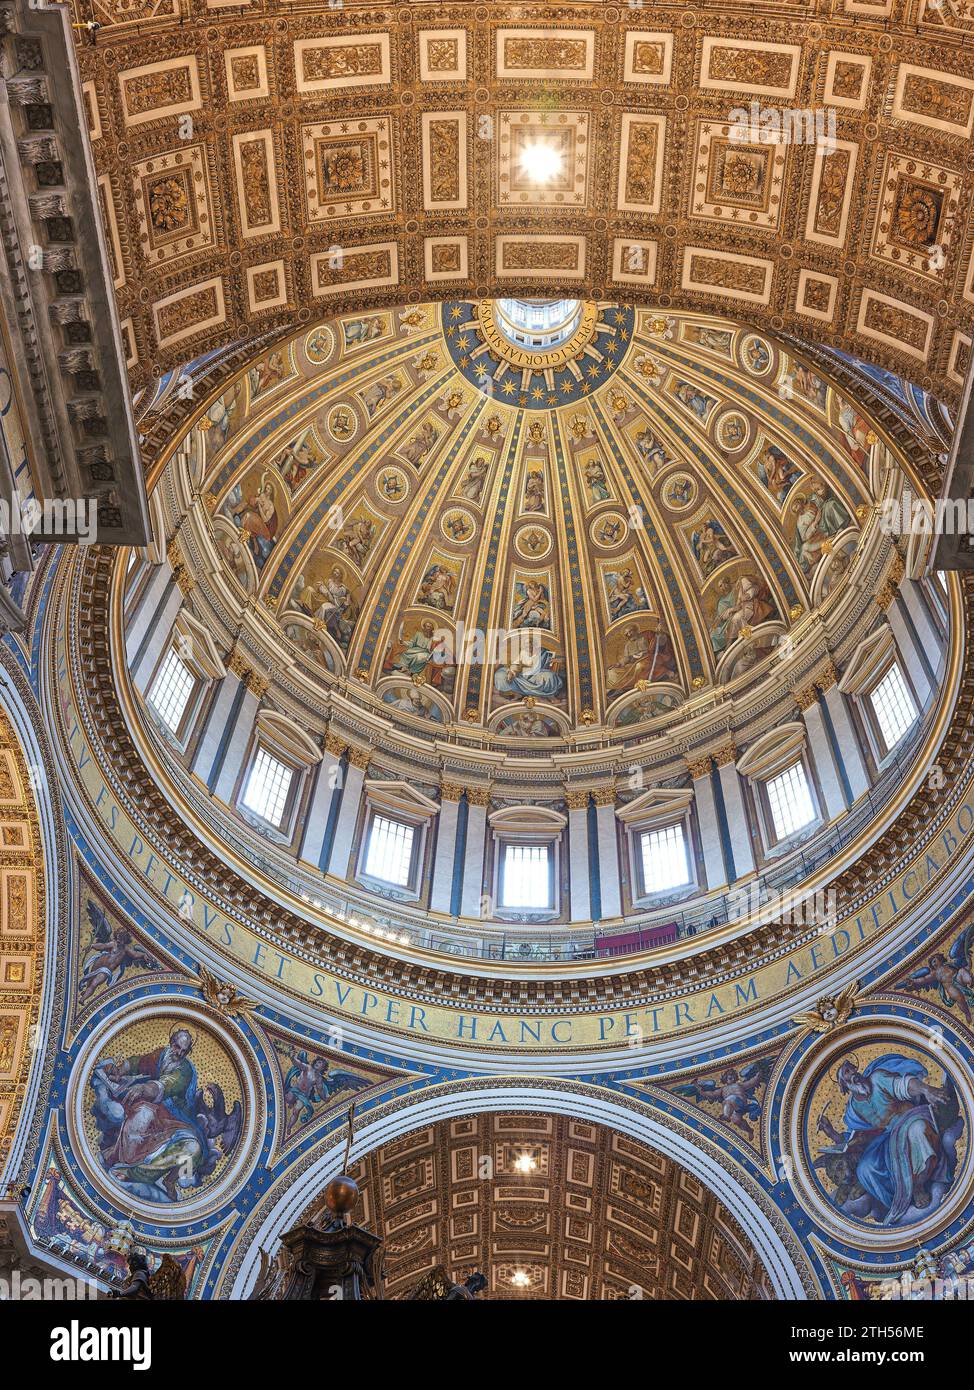 Illustrations en mosaïque sur le dessous du dôme principal dans la basilique Saint-Pierre, Vatican, Rome, Italie. Banque D'Images